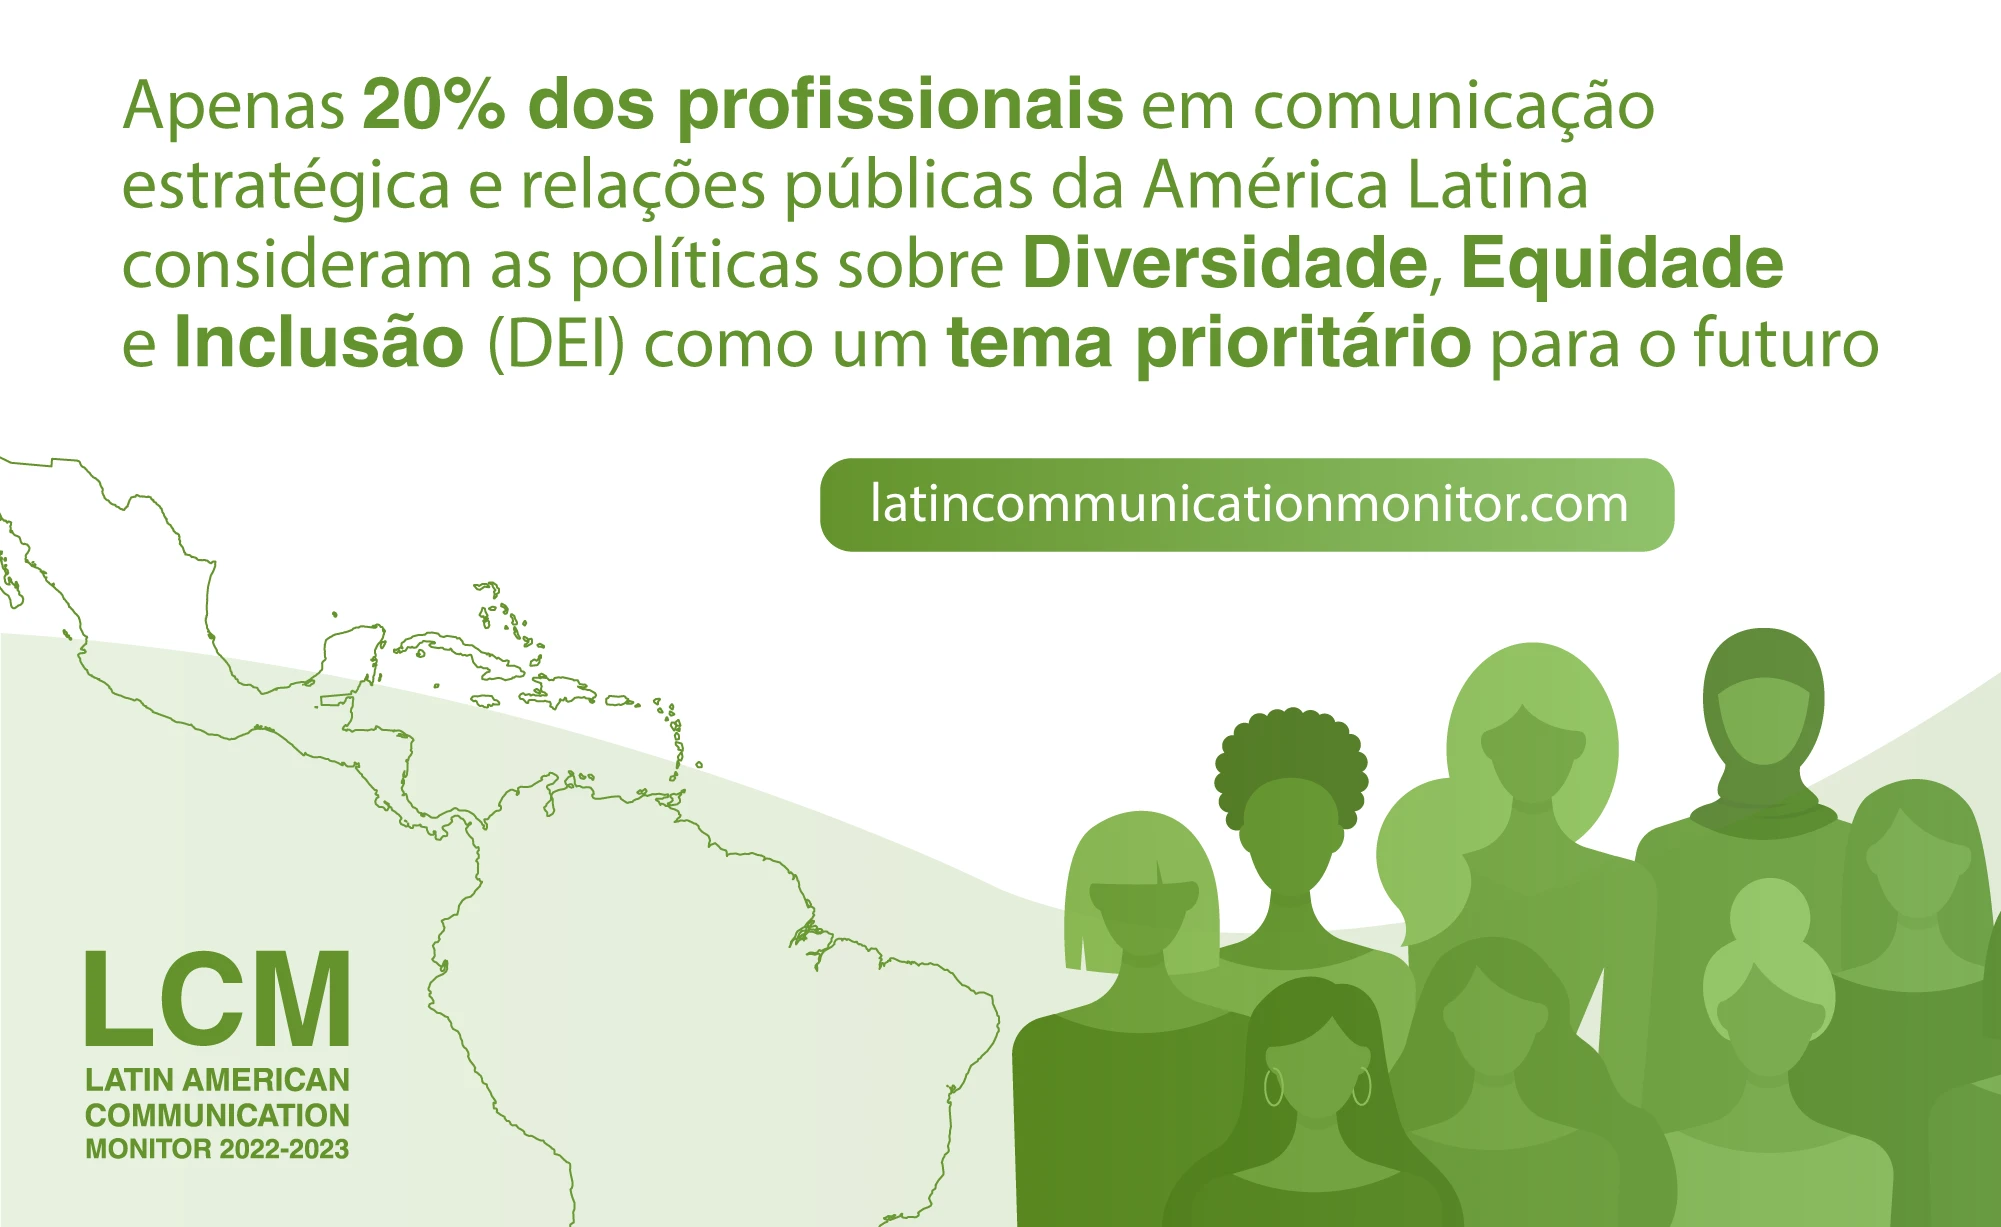 Apenas 20% dos profissionais em comunicação estratégica e relações públicas da América Latina consideram as políticas sobre Diversidade, Equidade e Inclusão (DEI) como um tema prioritário para o futuro